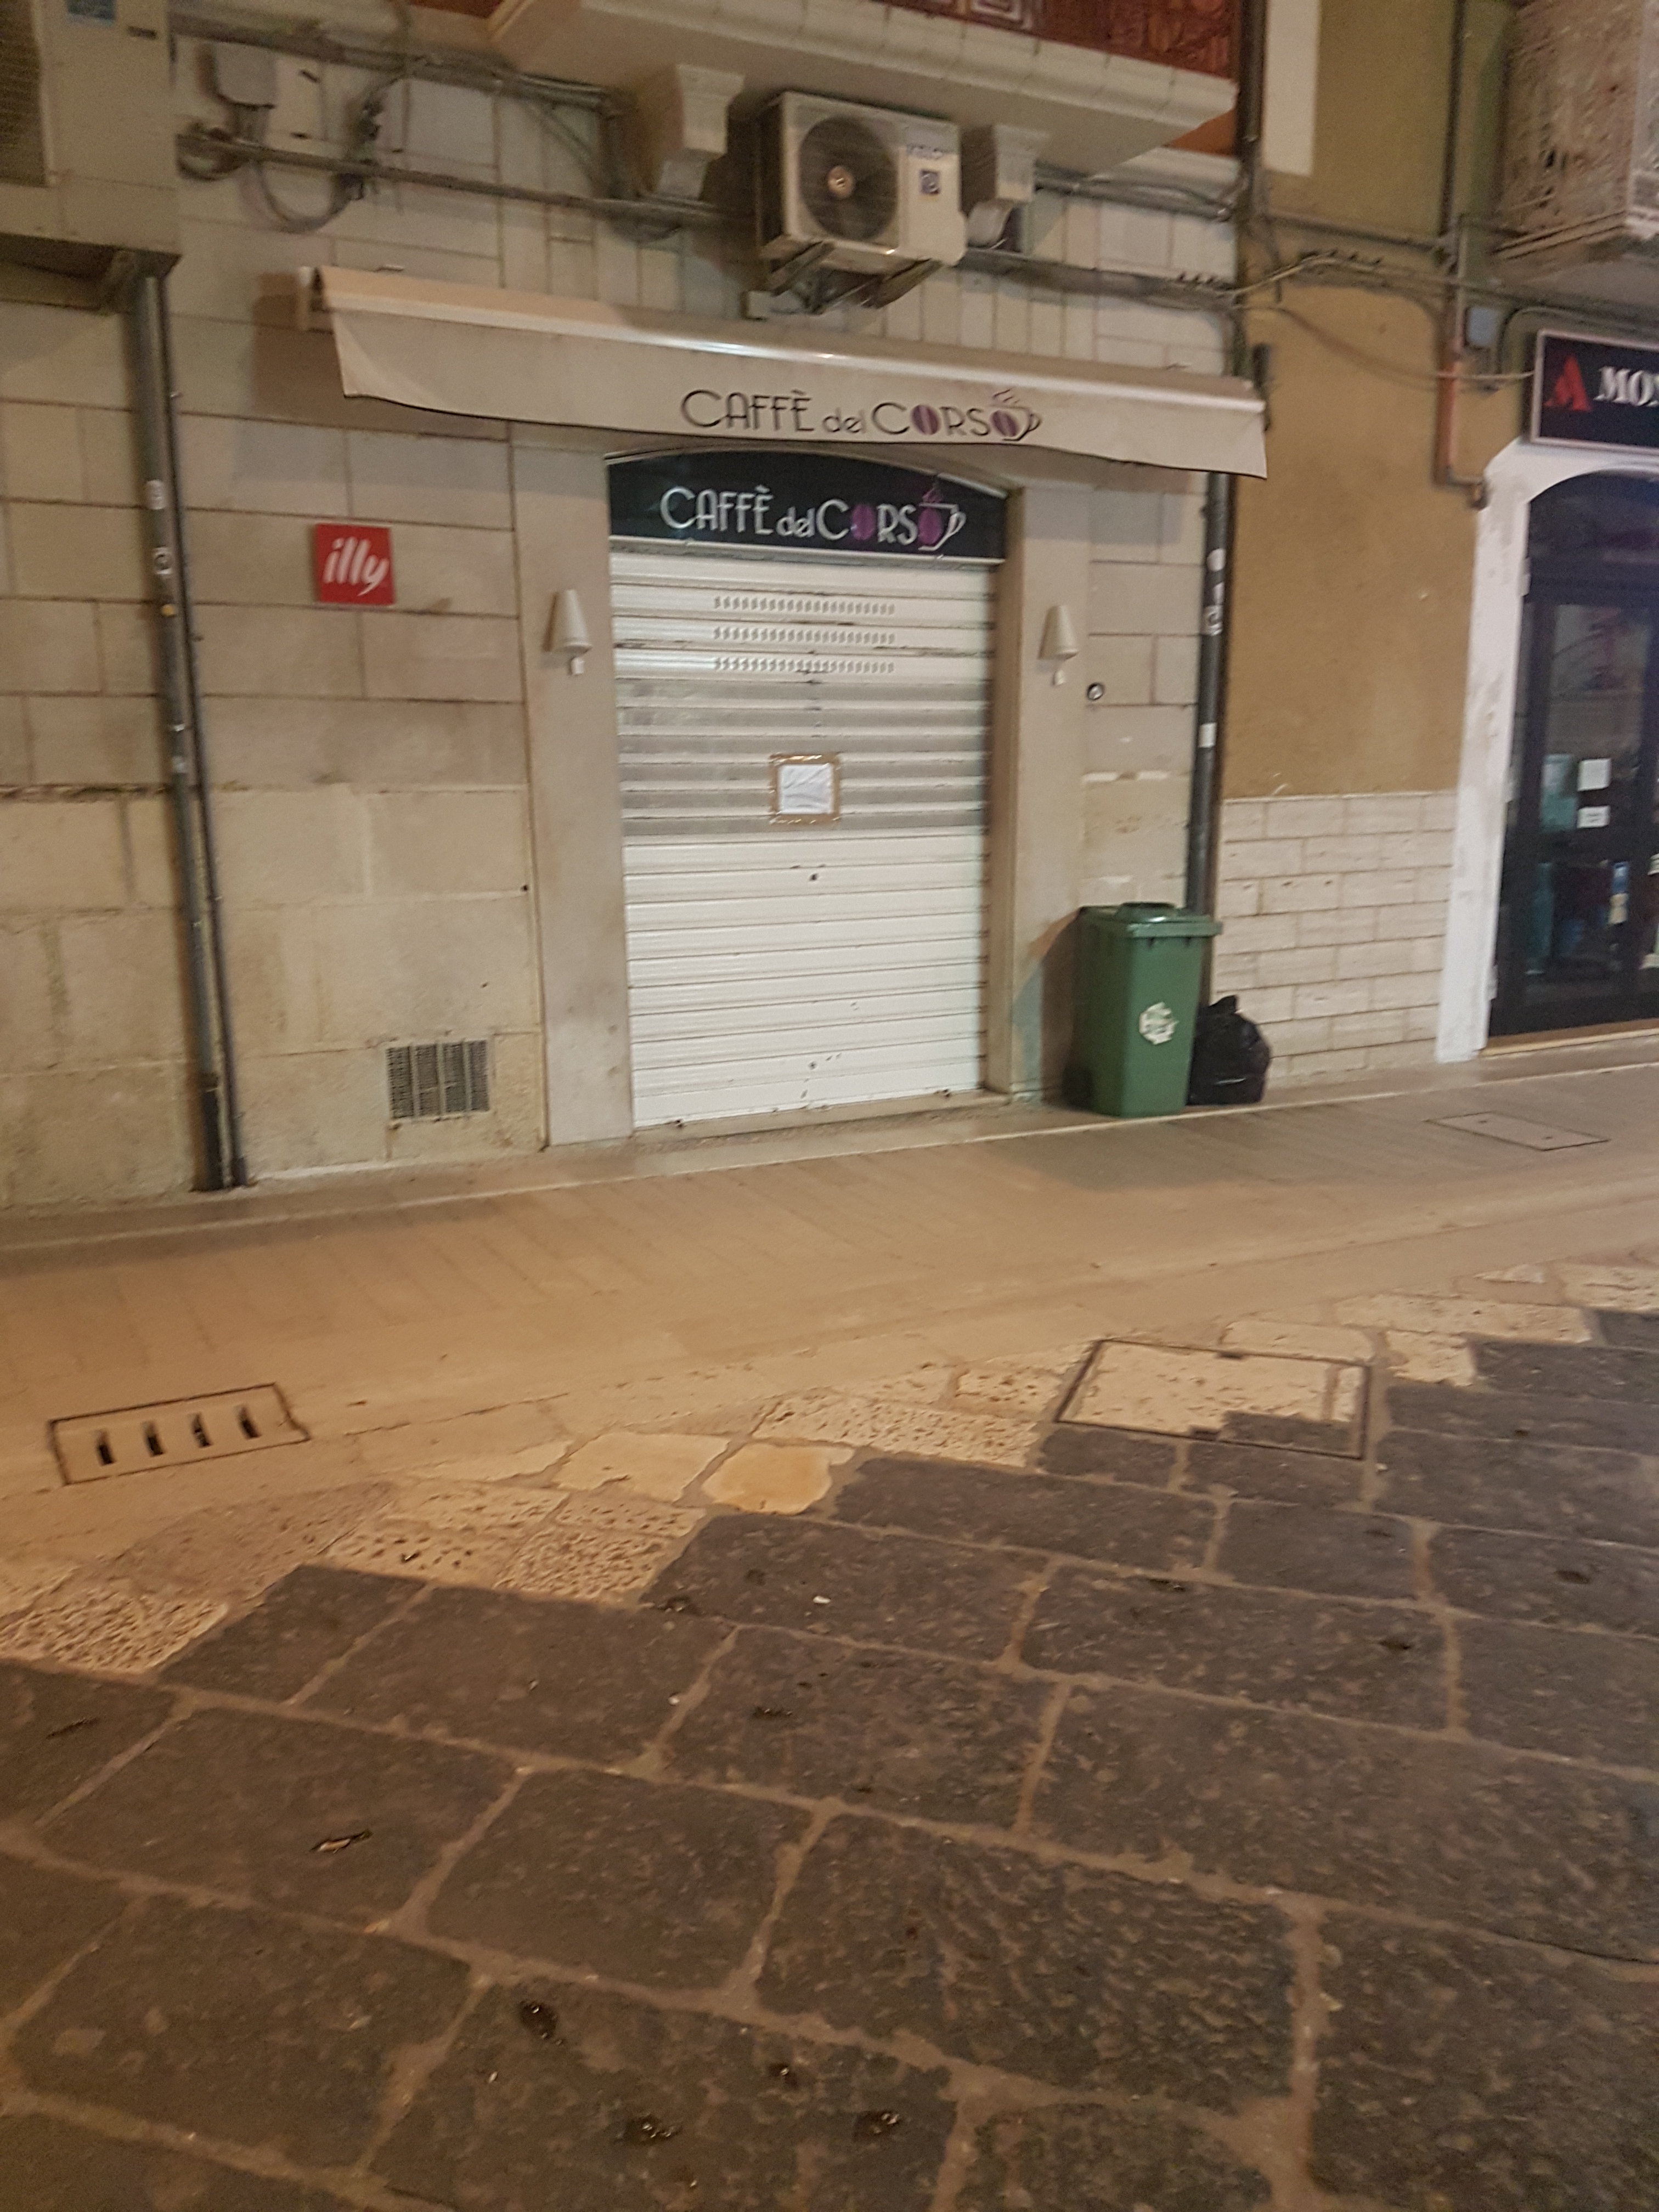 Manfredonia, blitz della polizia in centro: sequestrato bar “Caffè del Corso